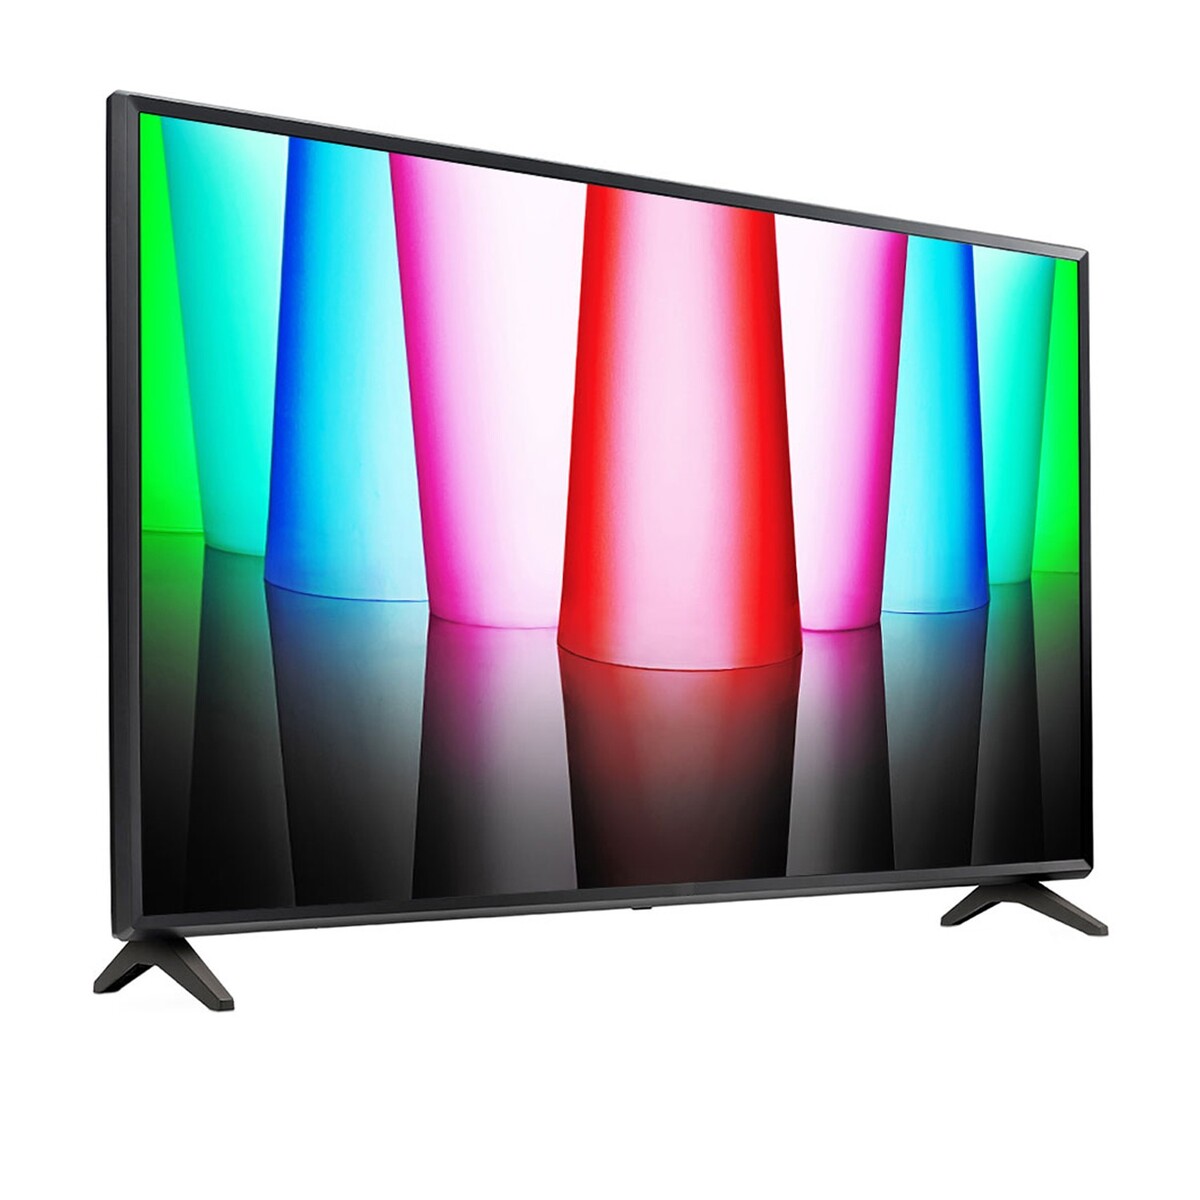 LG Smart LED TV 32LQ570BPSA 32"